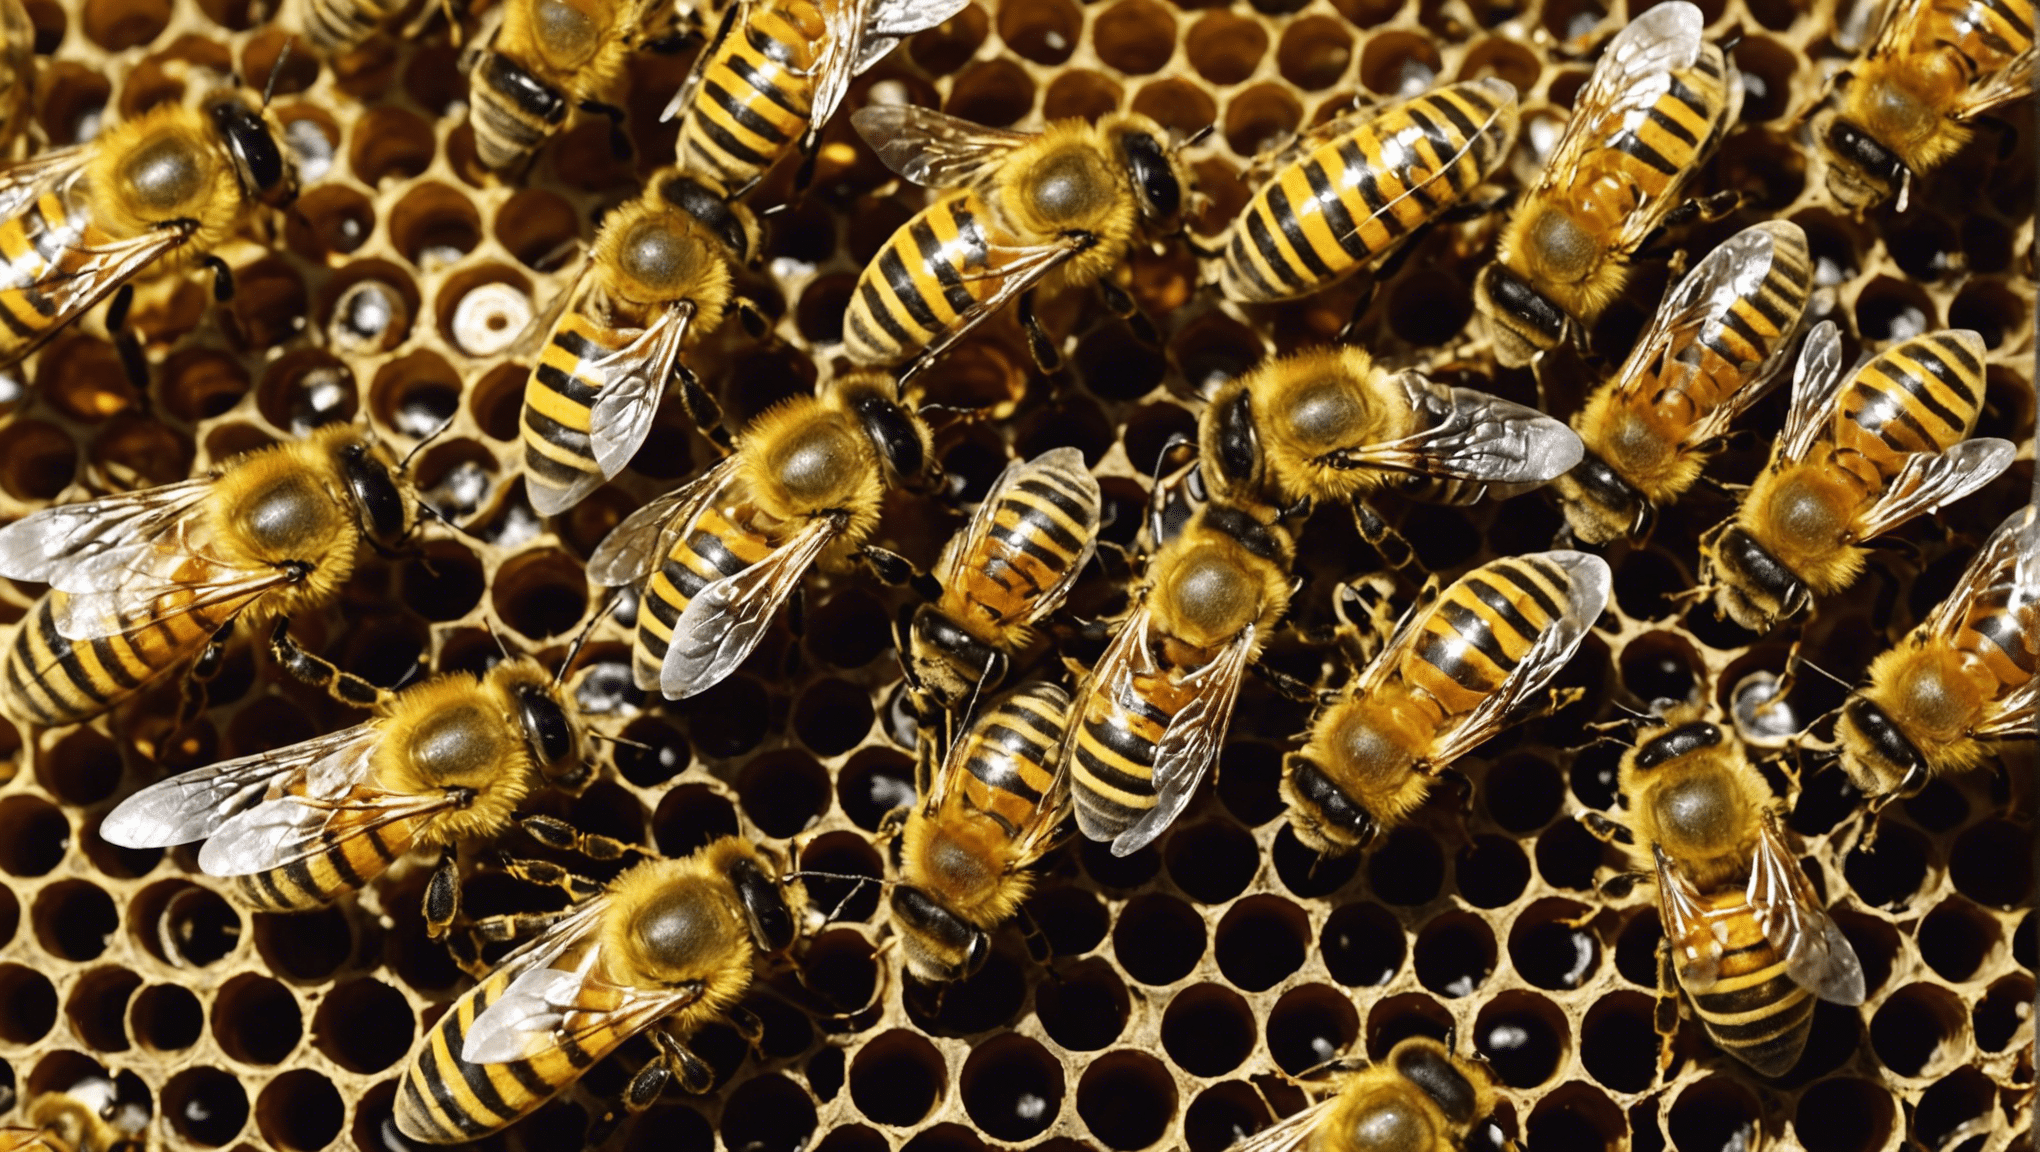 scopri perché la vita delle api è così favolosa ed essenziale per il nostro ecosistema in questo articolo accattivante.